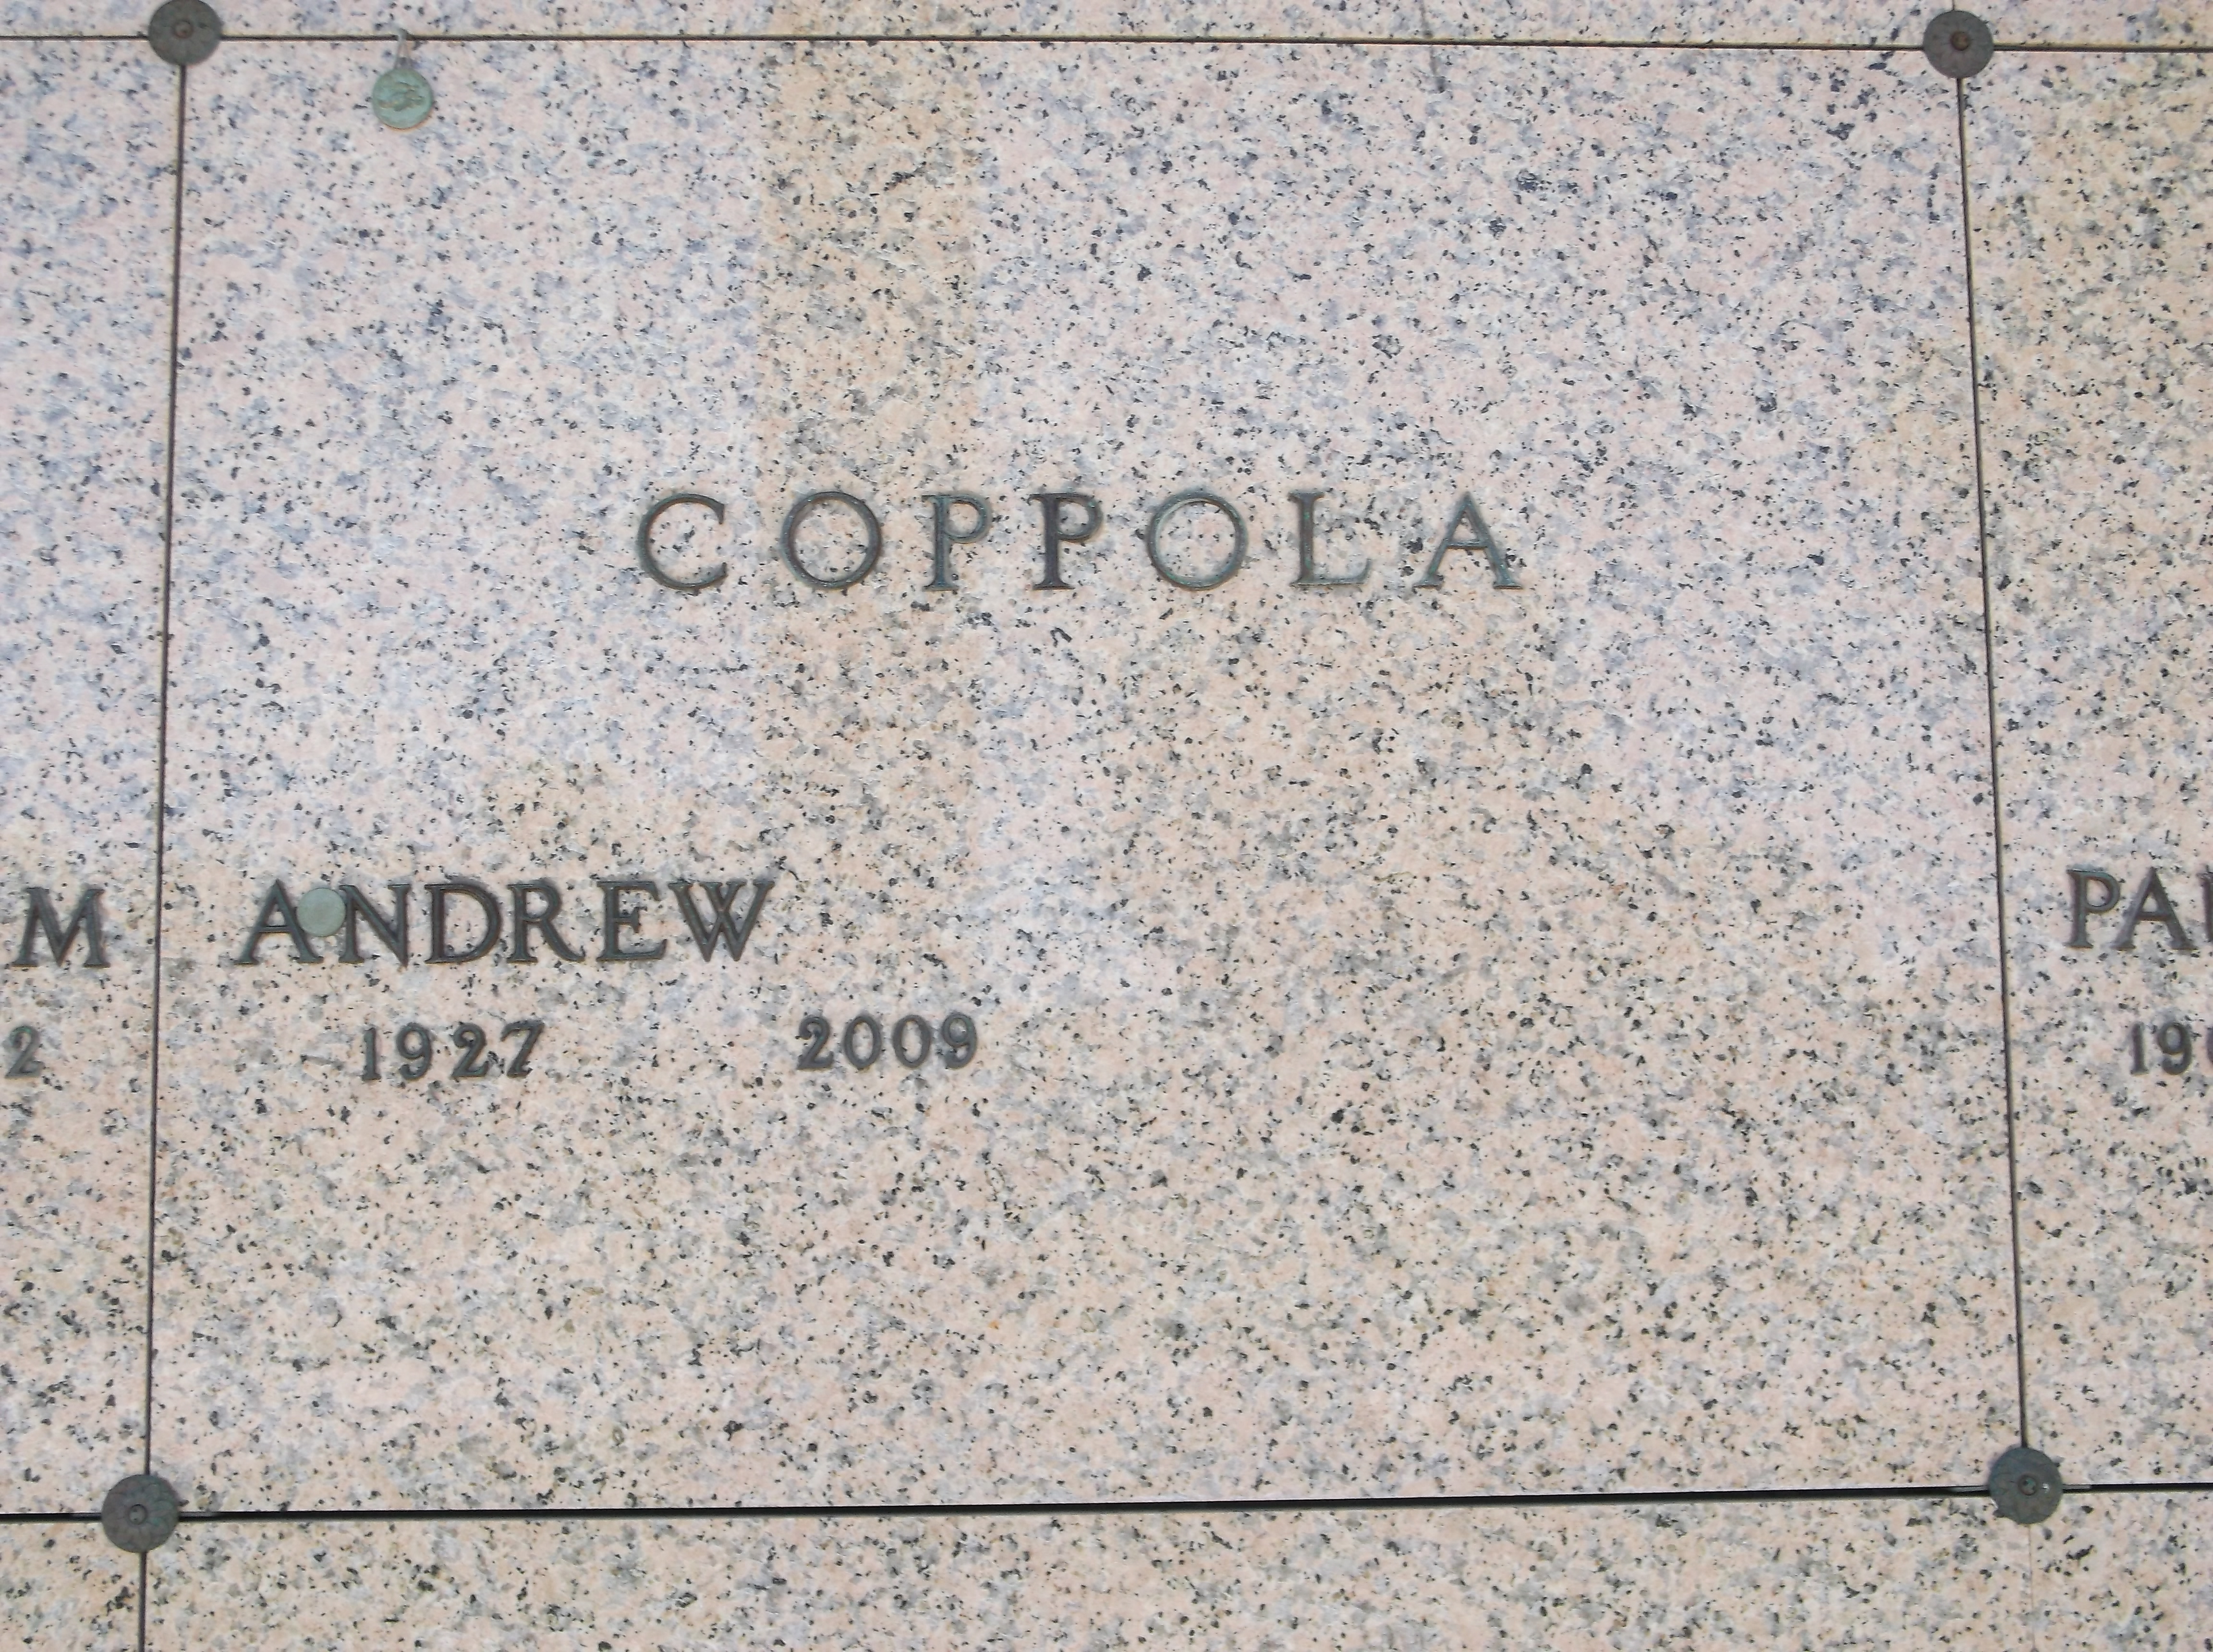 Andrew Coppola